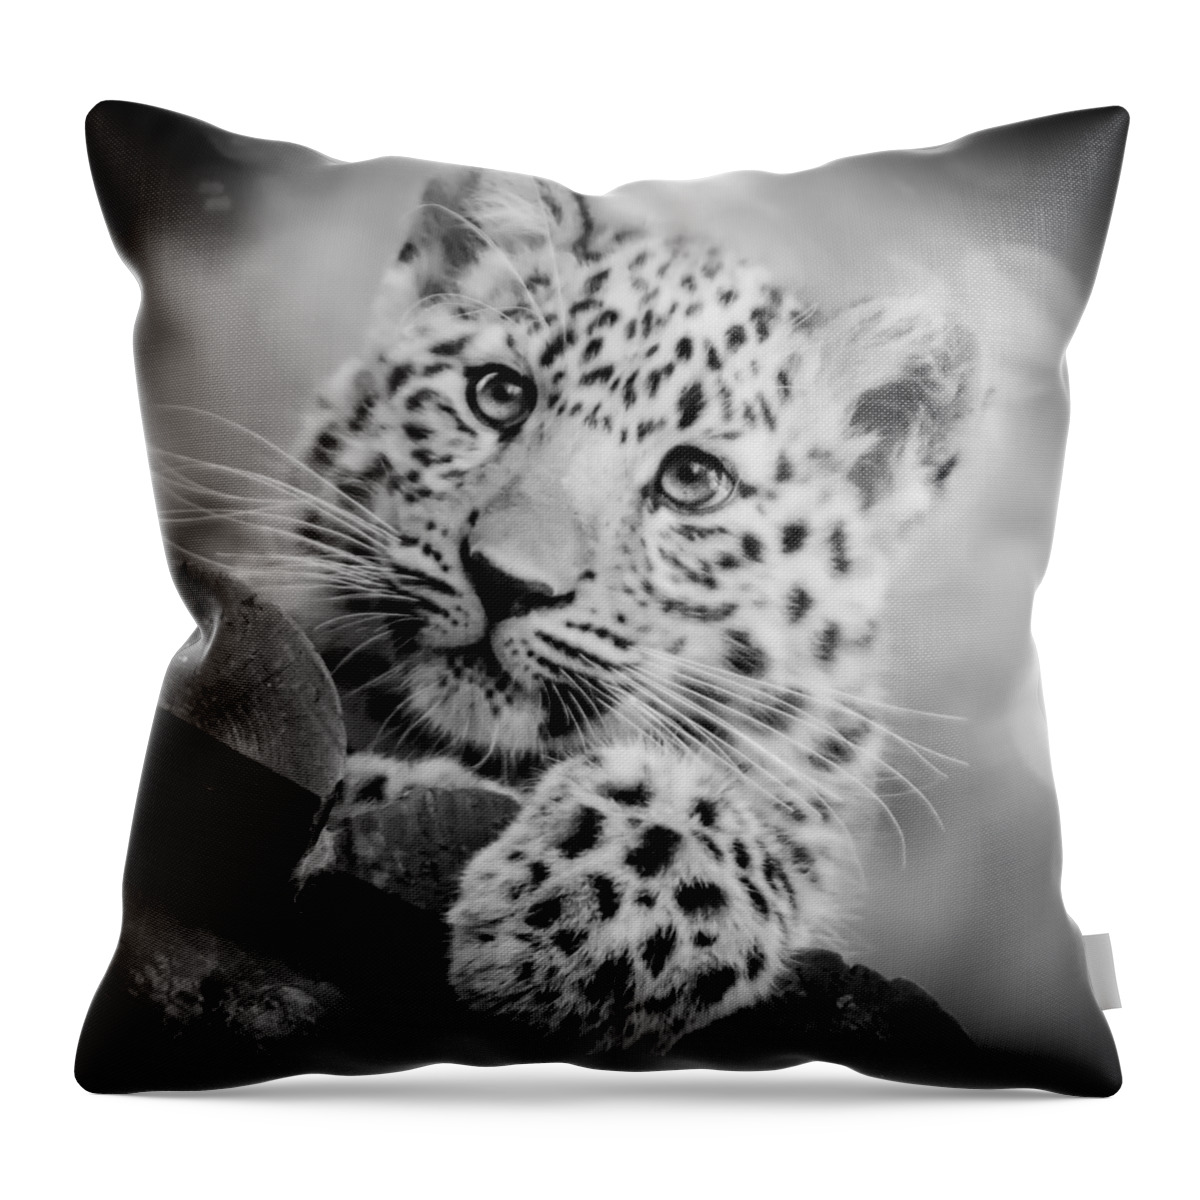 Amur Throw Pillow featuring the photograph Amur Leopard Cub Portrait by Chris Boulton